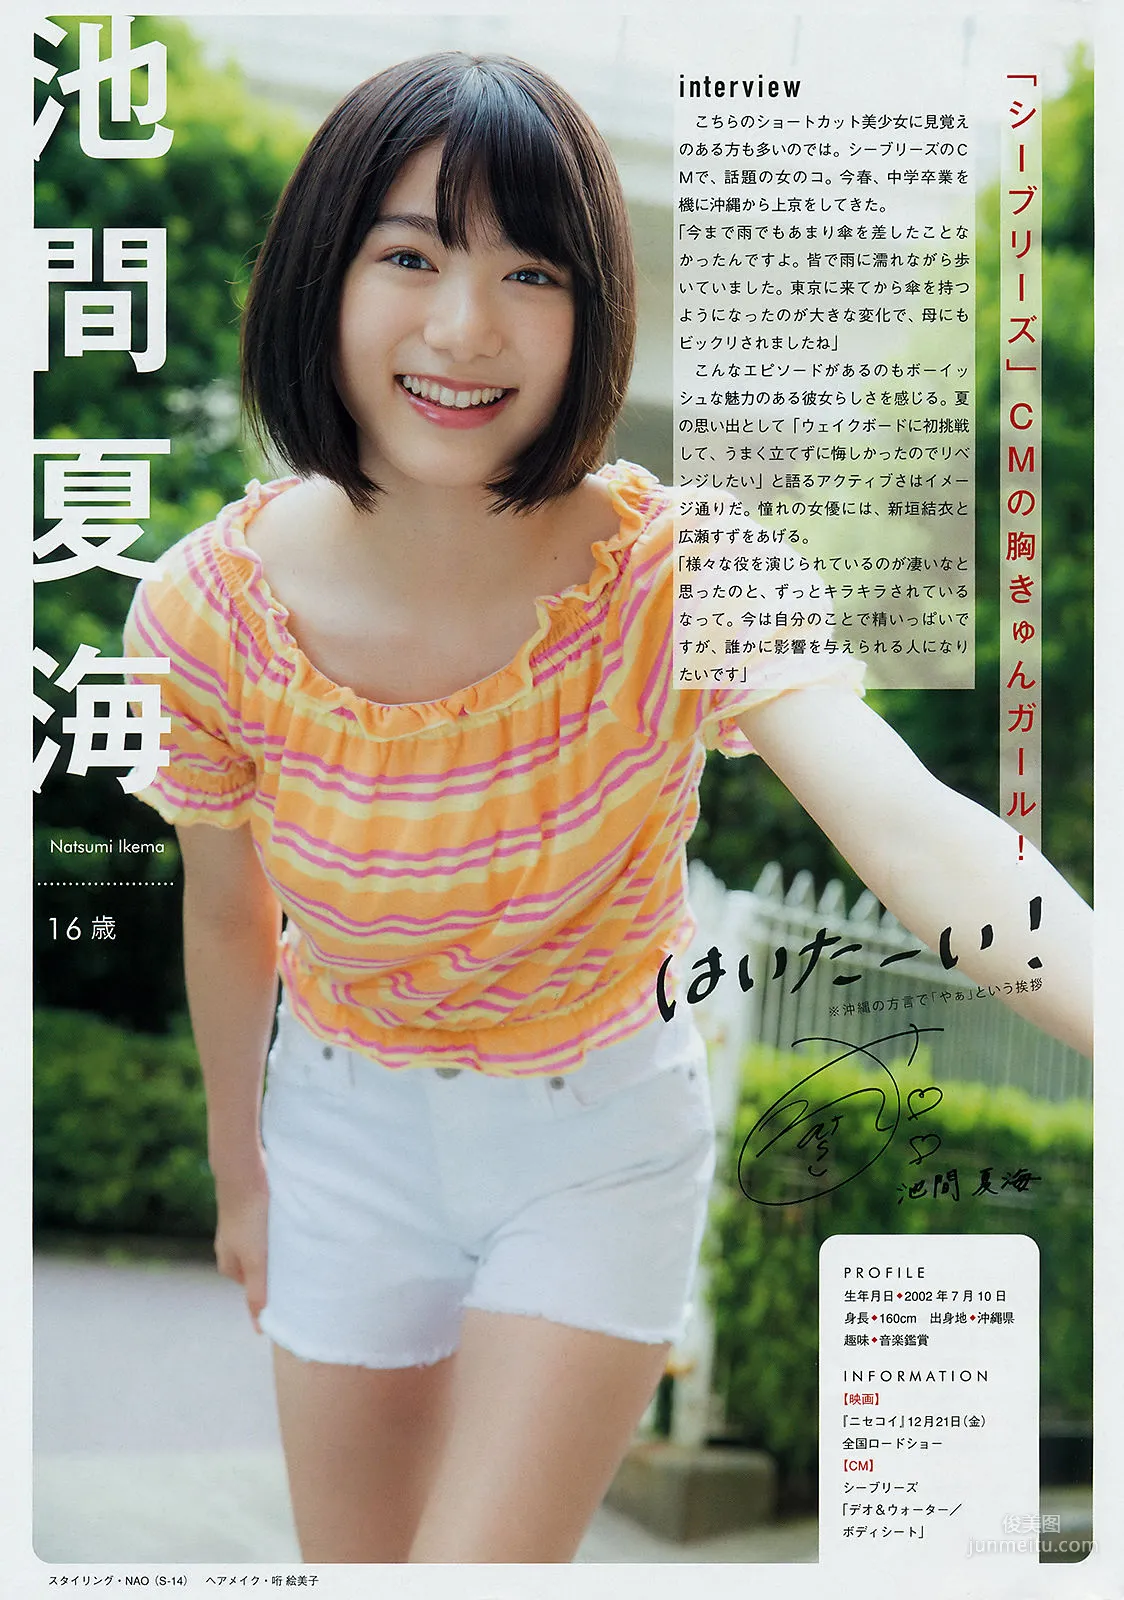 [Young Magazine] 佐野ひなこ Hinako Sano 2018年No.45 写真杂志11